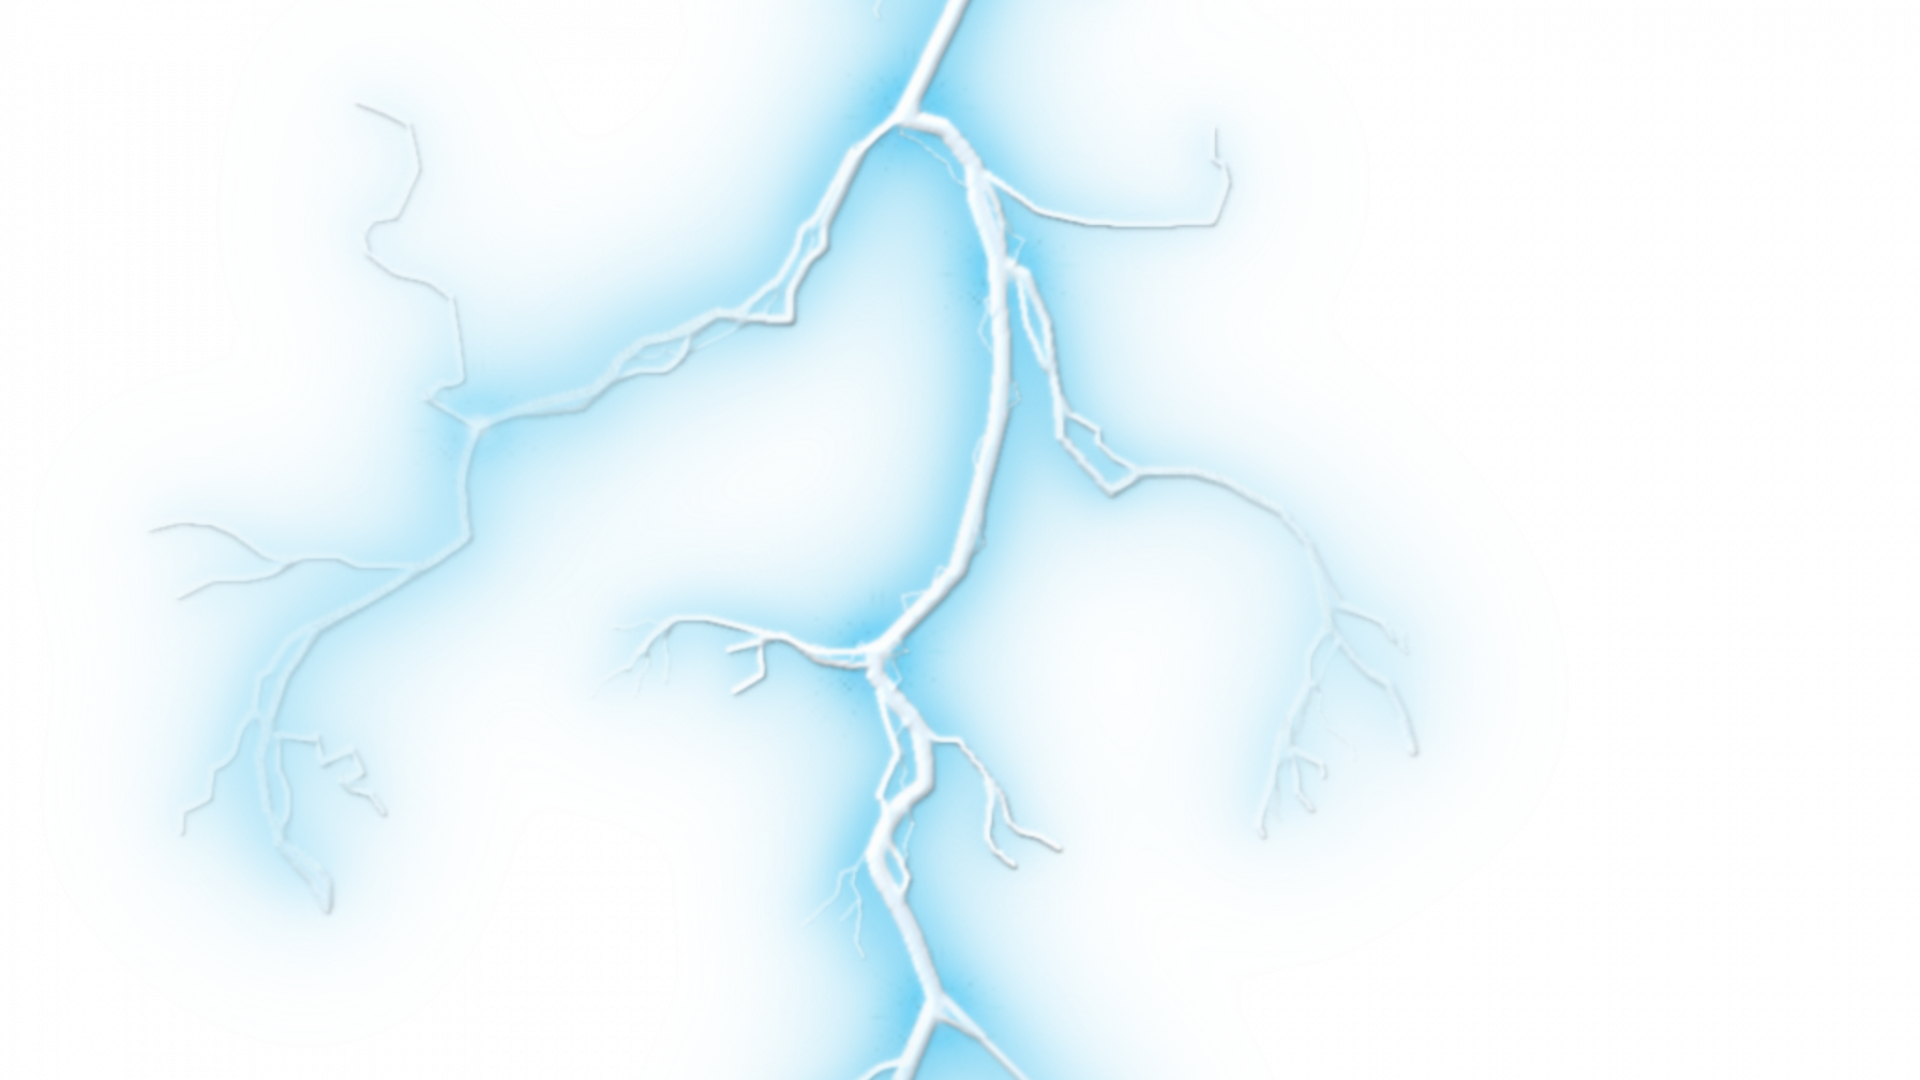 Download Blue Lightning White Background Lightning Bolt Png Transparent Background Bolt Of Lightning Png Png Image With No Background Pngkey Com